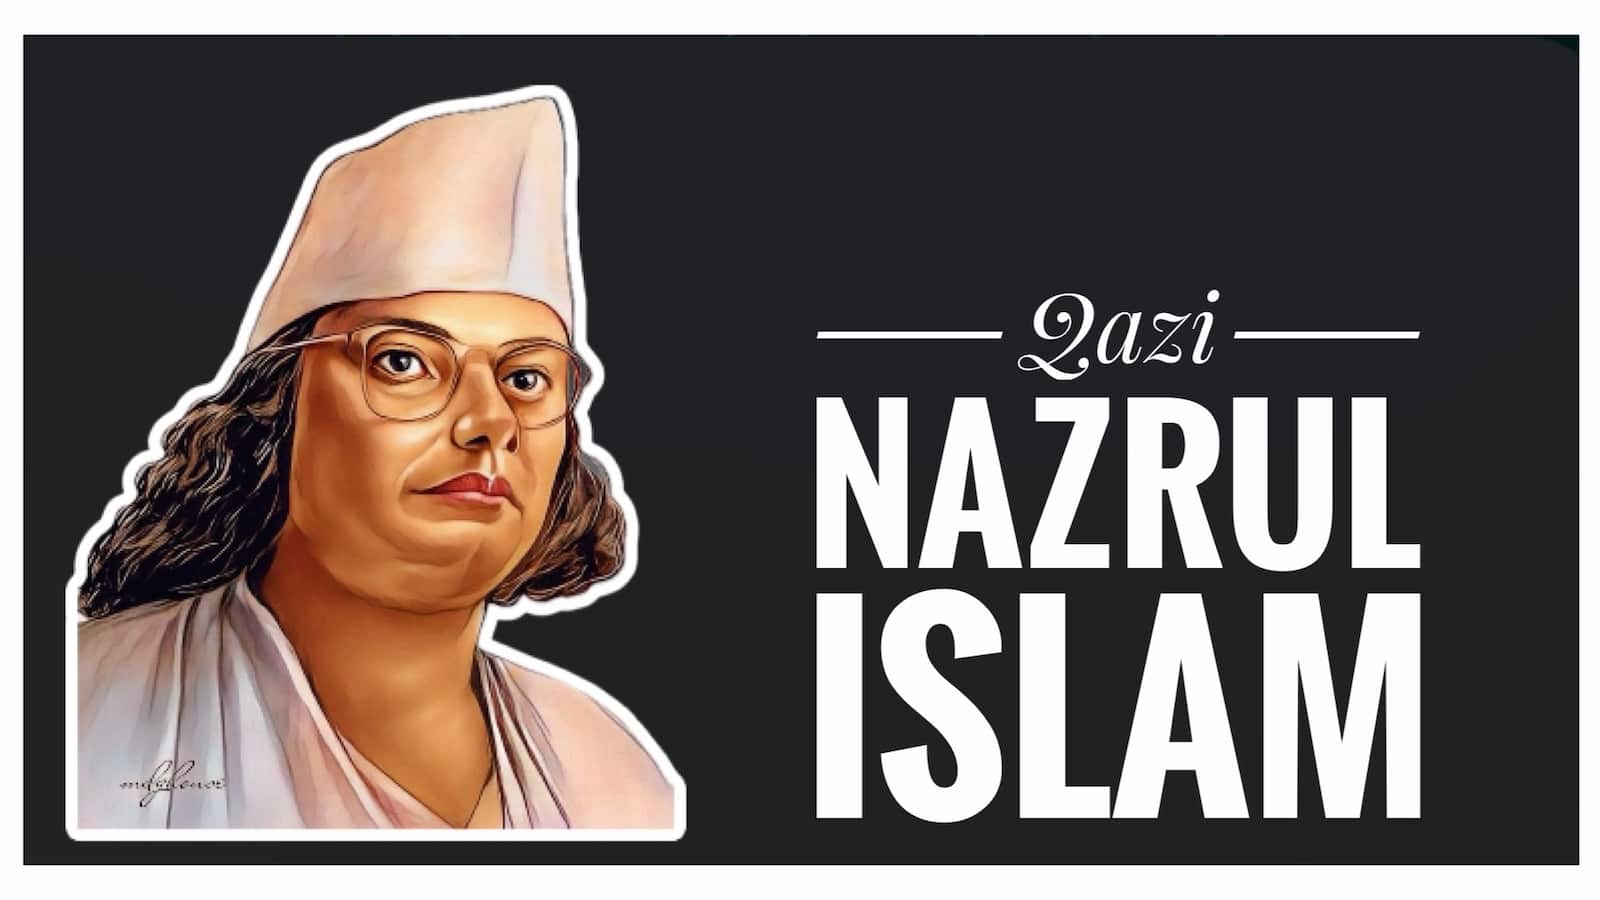 A cover image of Kazi Nazrul Islam